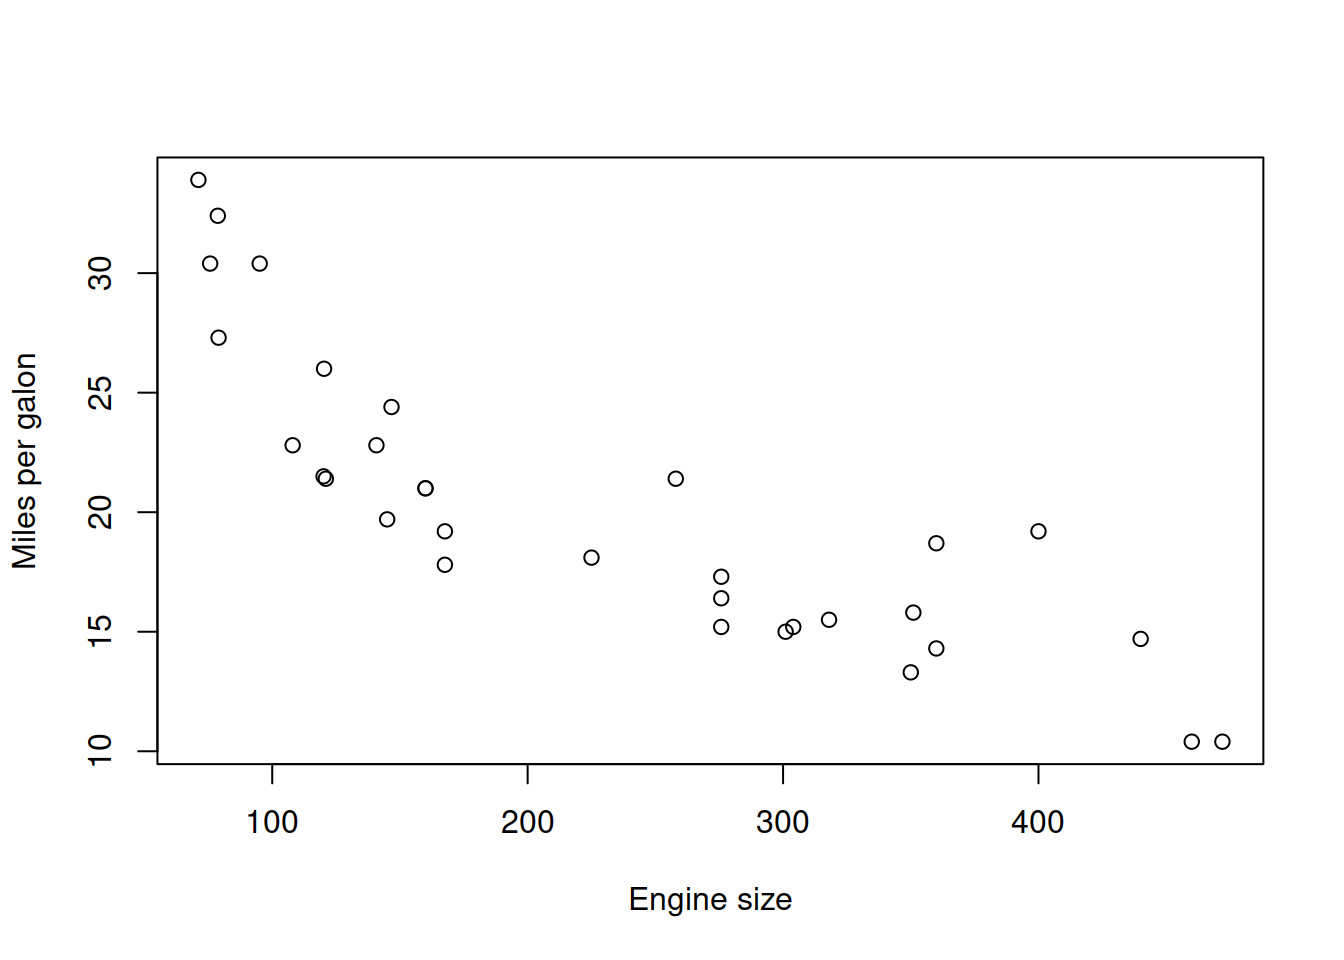 Fuel consumption vs engine size